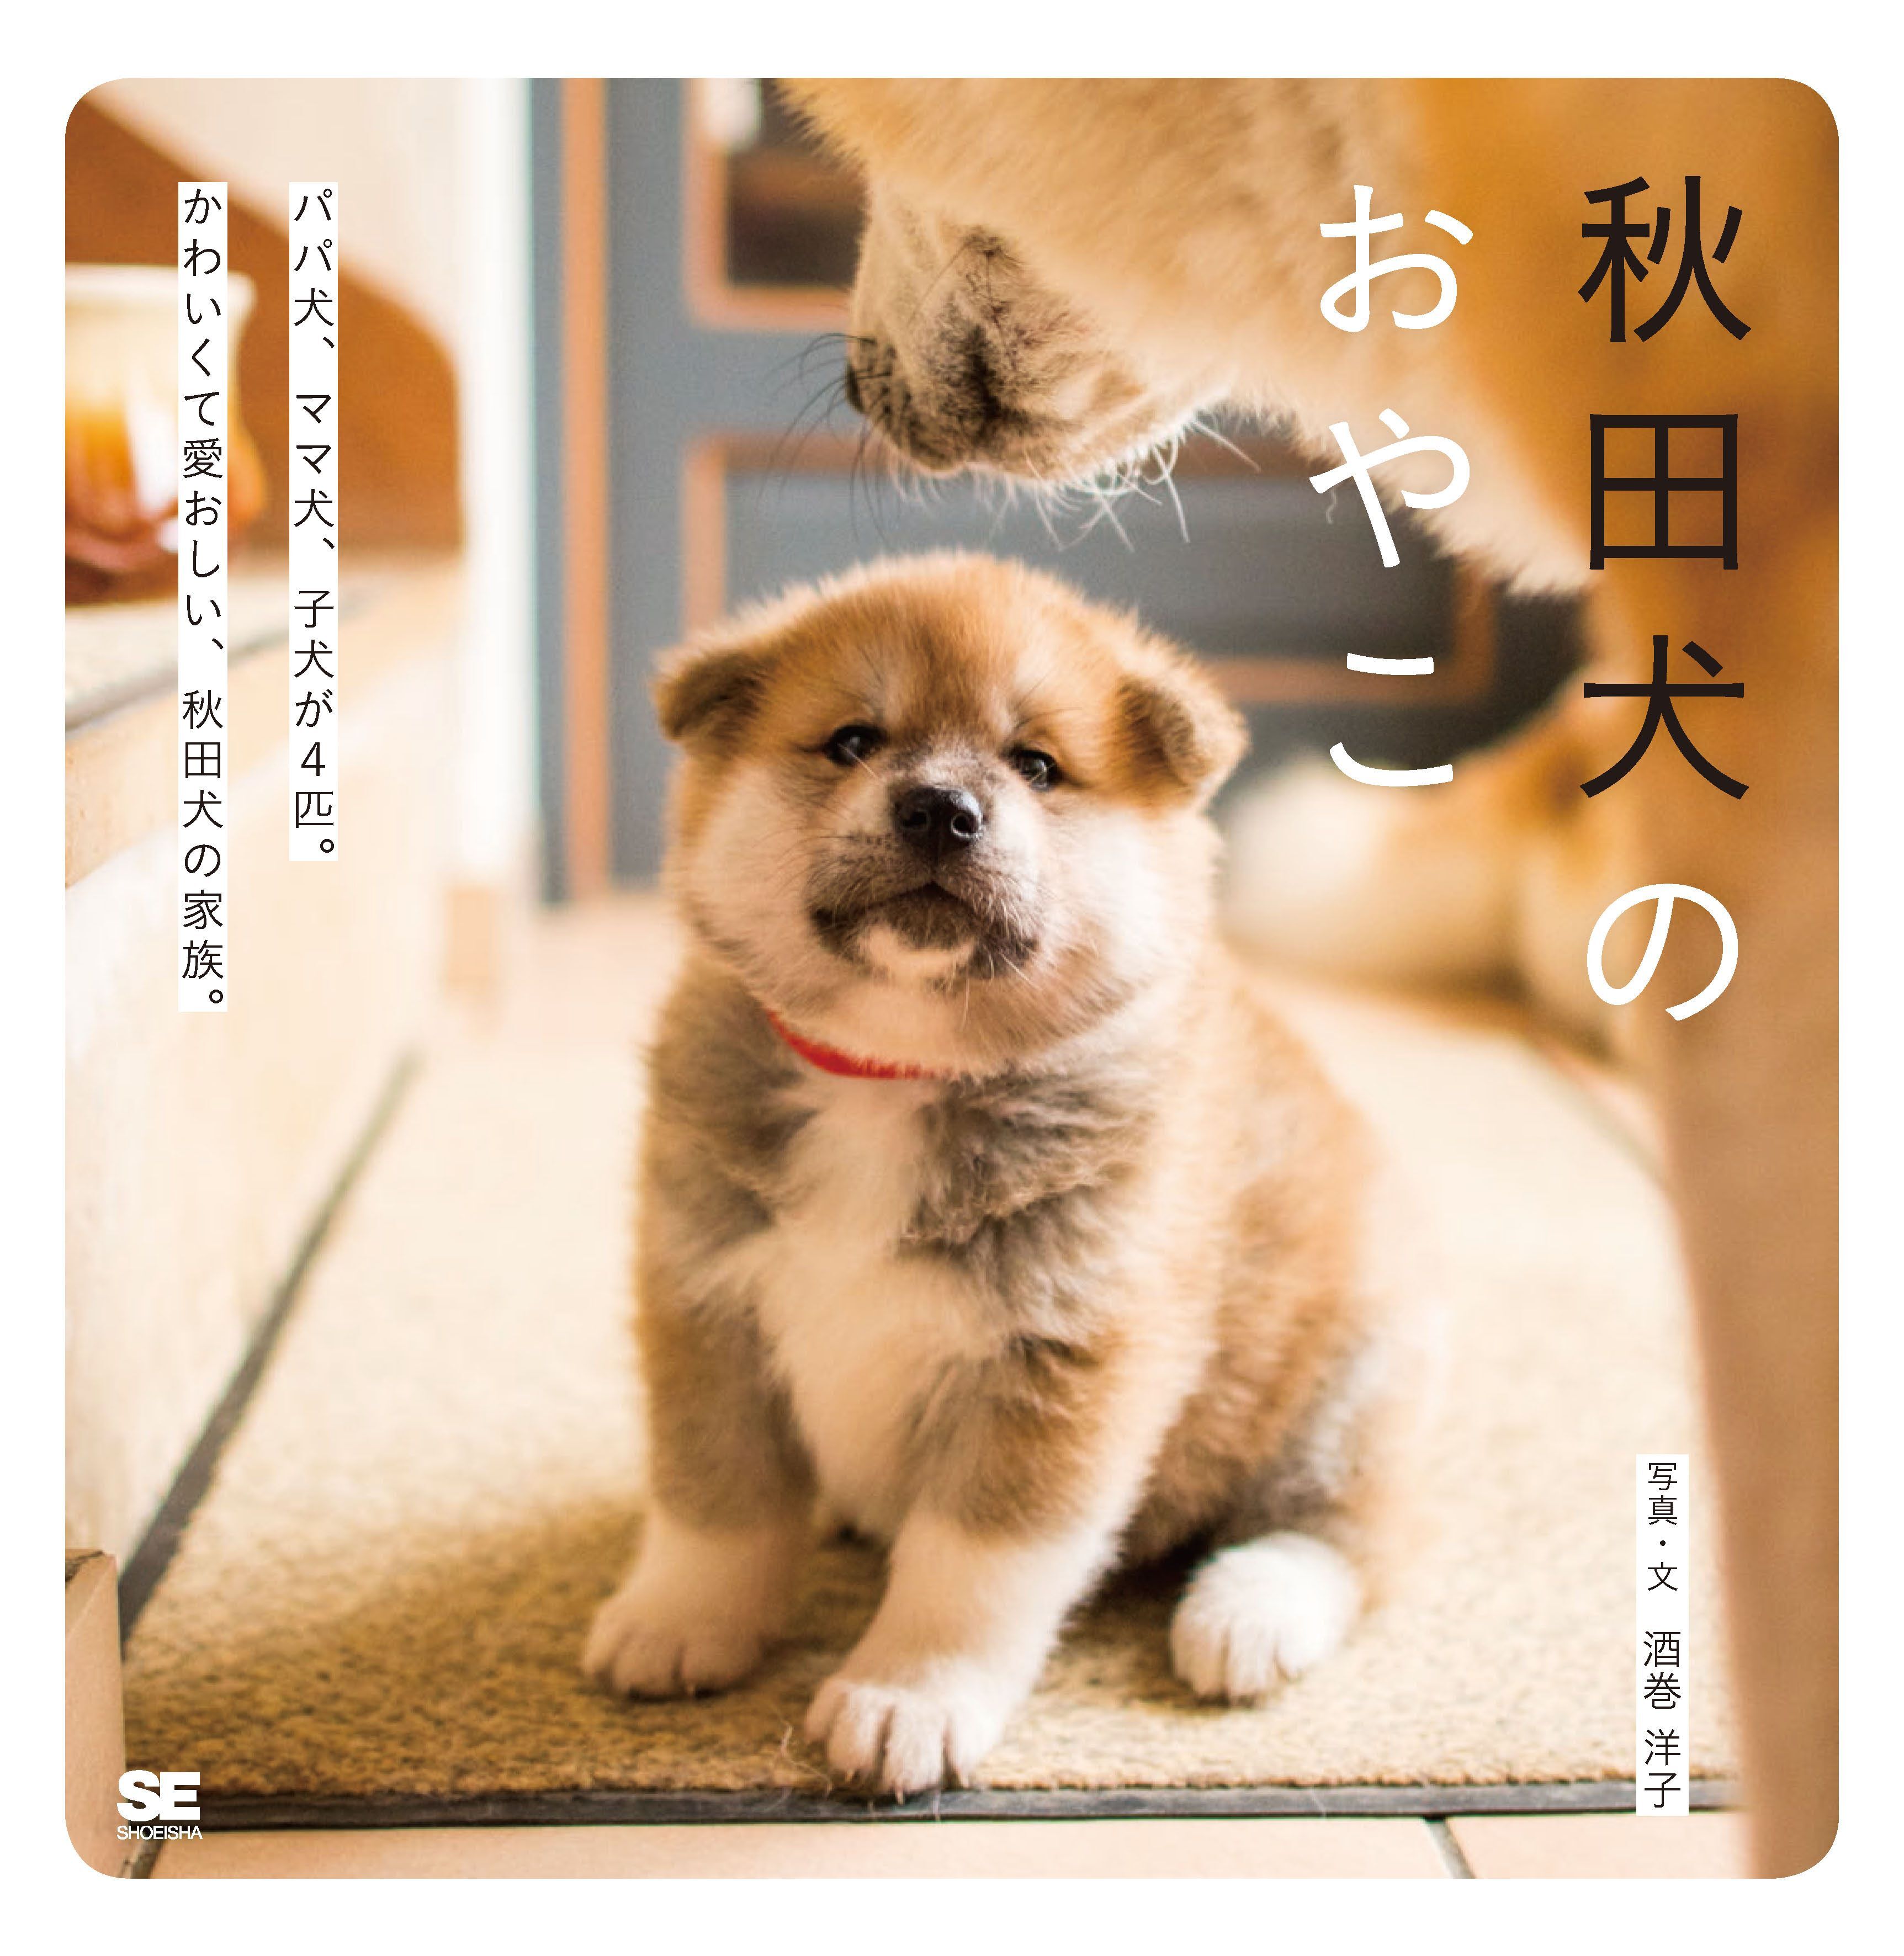 フランスで生まれた かわいい秋田犬の赤ちゃんの写真集 秋田犬のおやこ 翔泳社